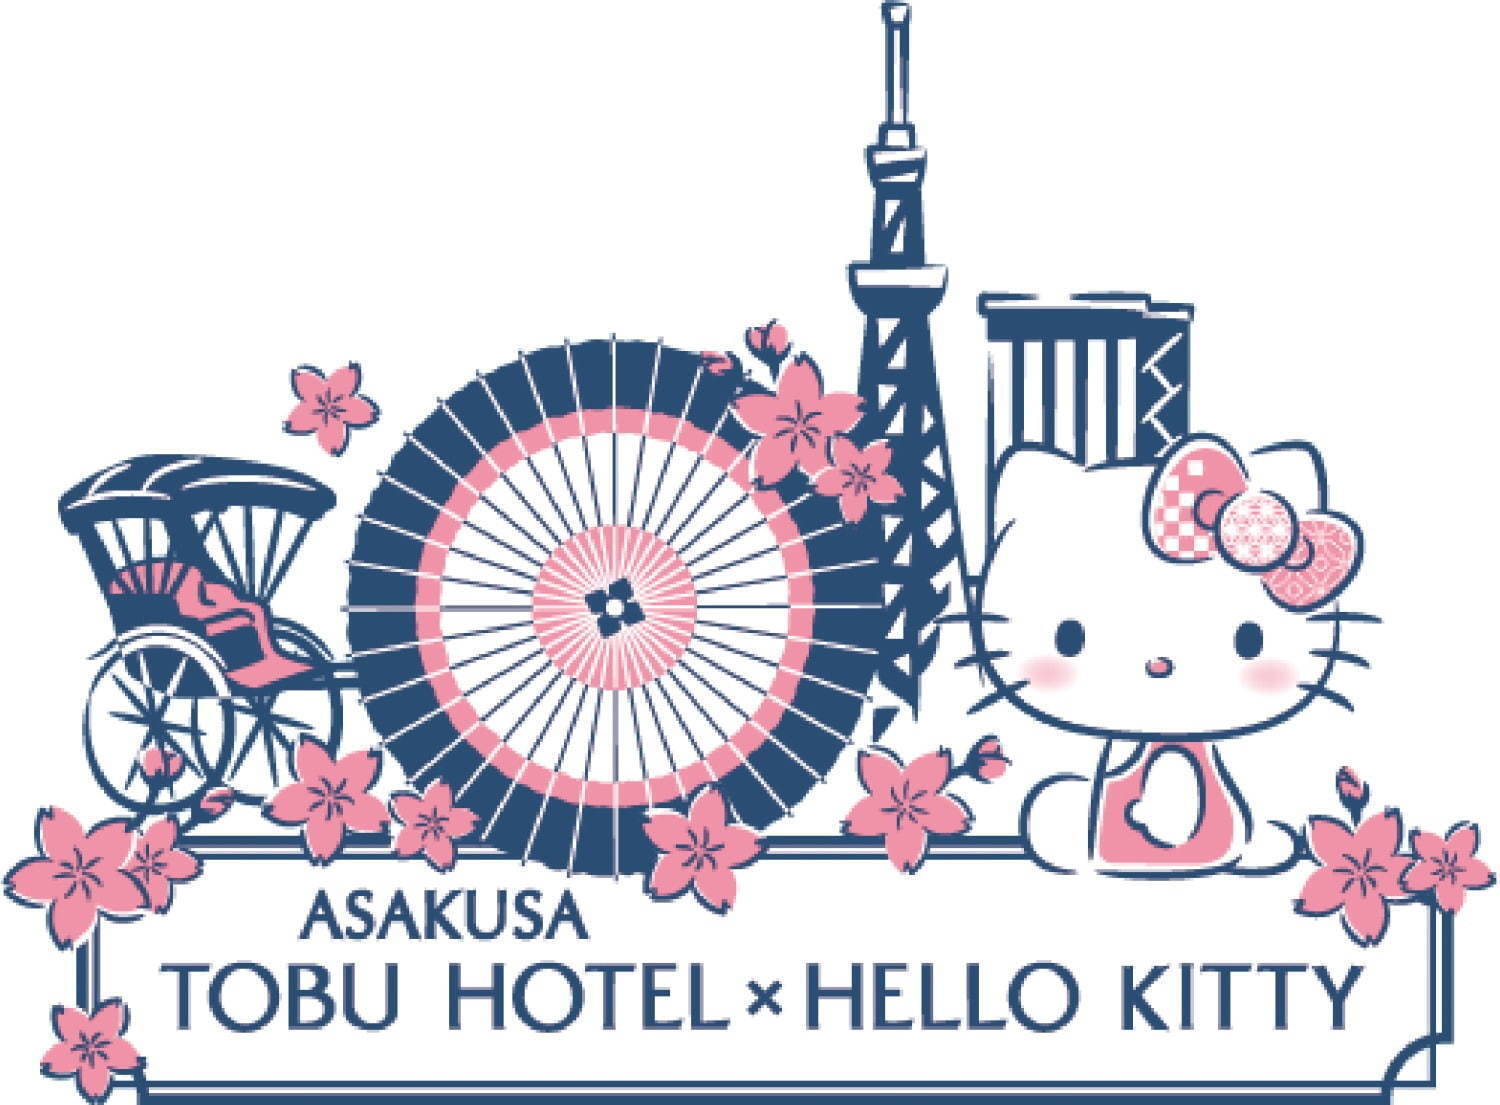 浅草東武ホテルがサンリオとコラボ ハローキティルーム 誕生 年8月25日 エキサイトニュース